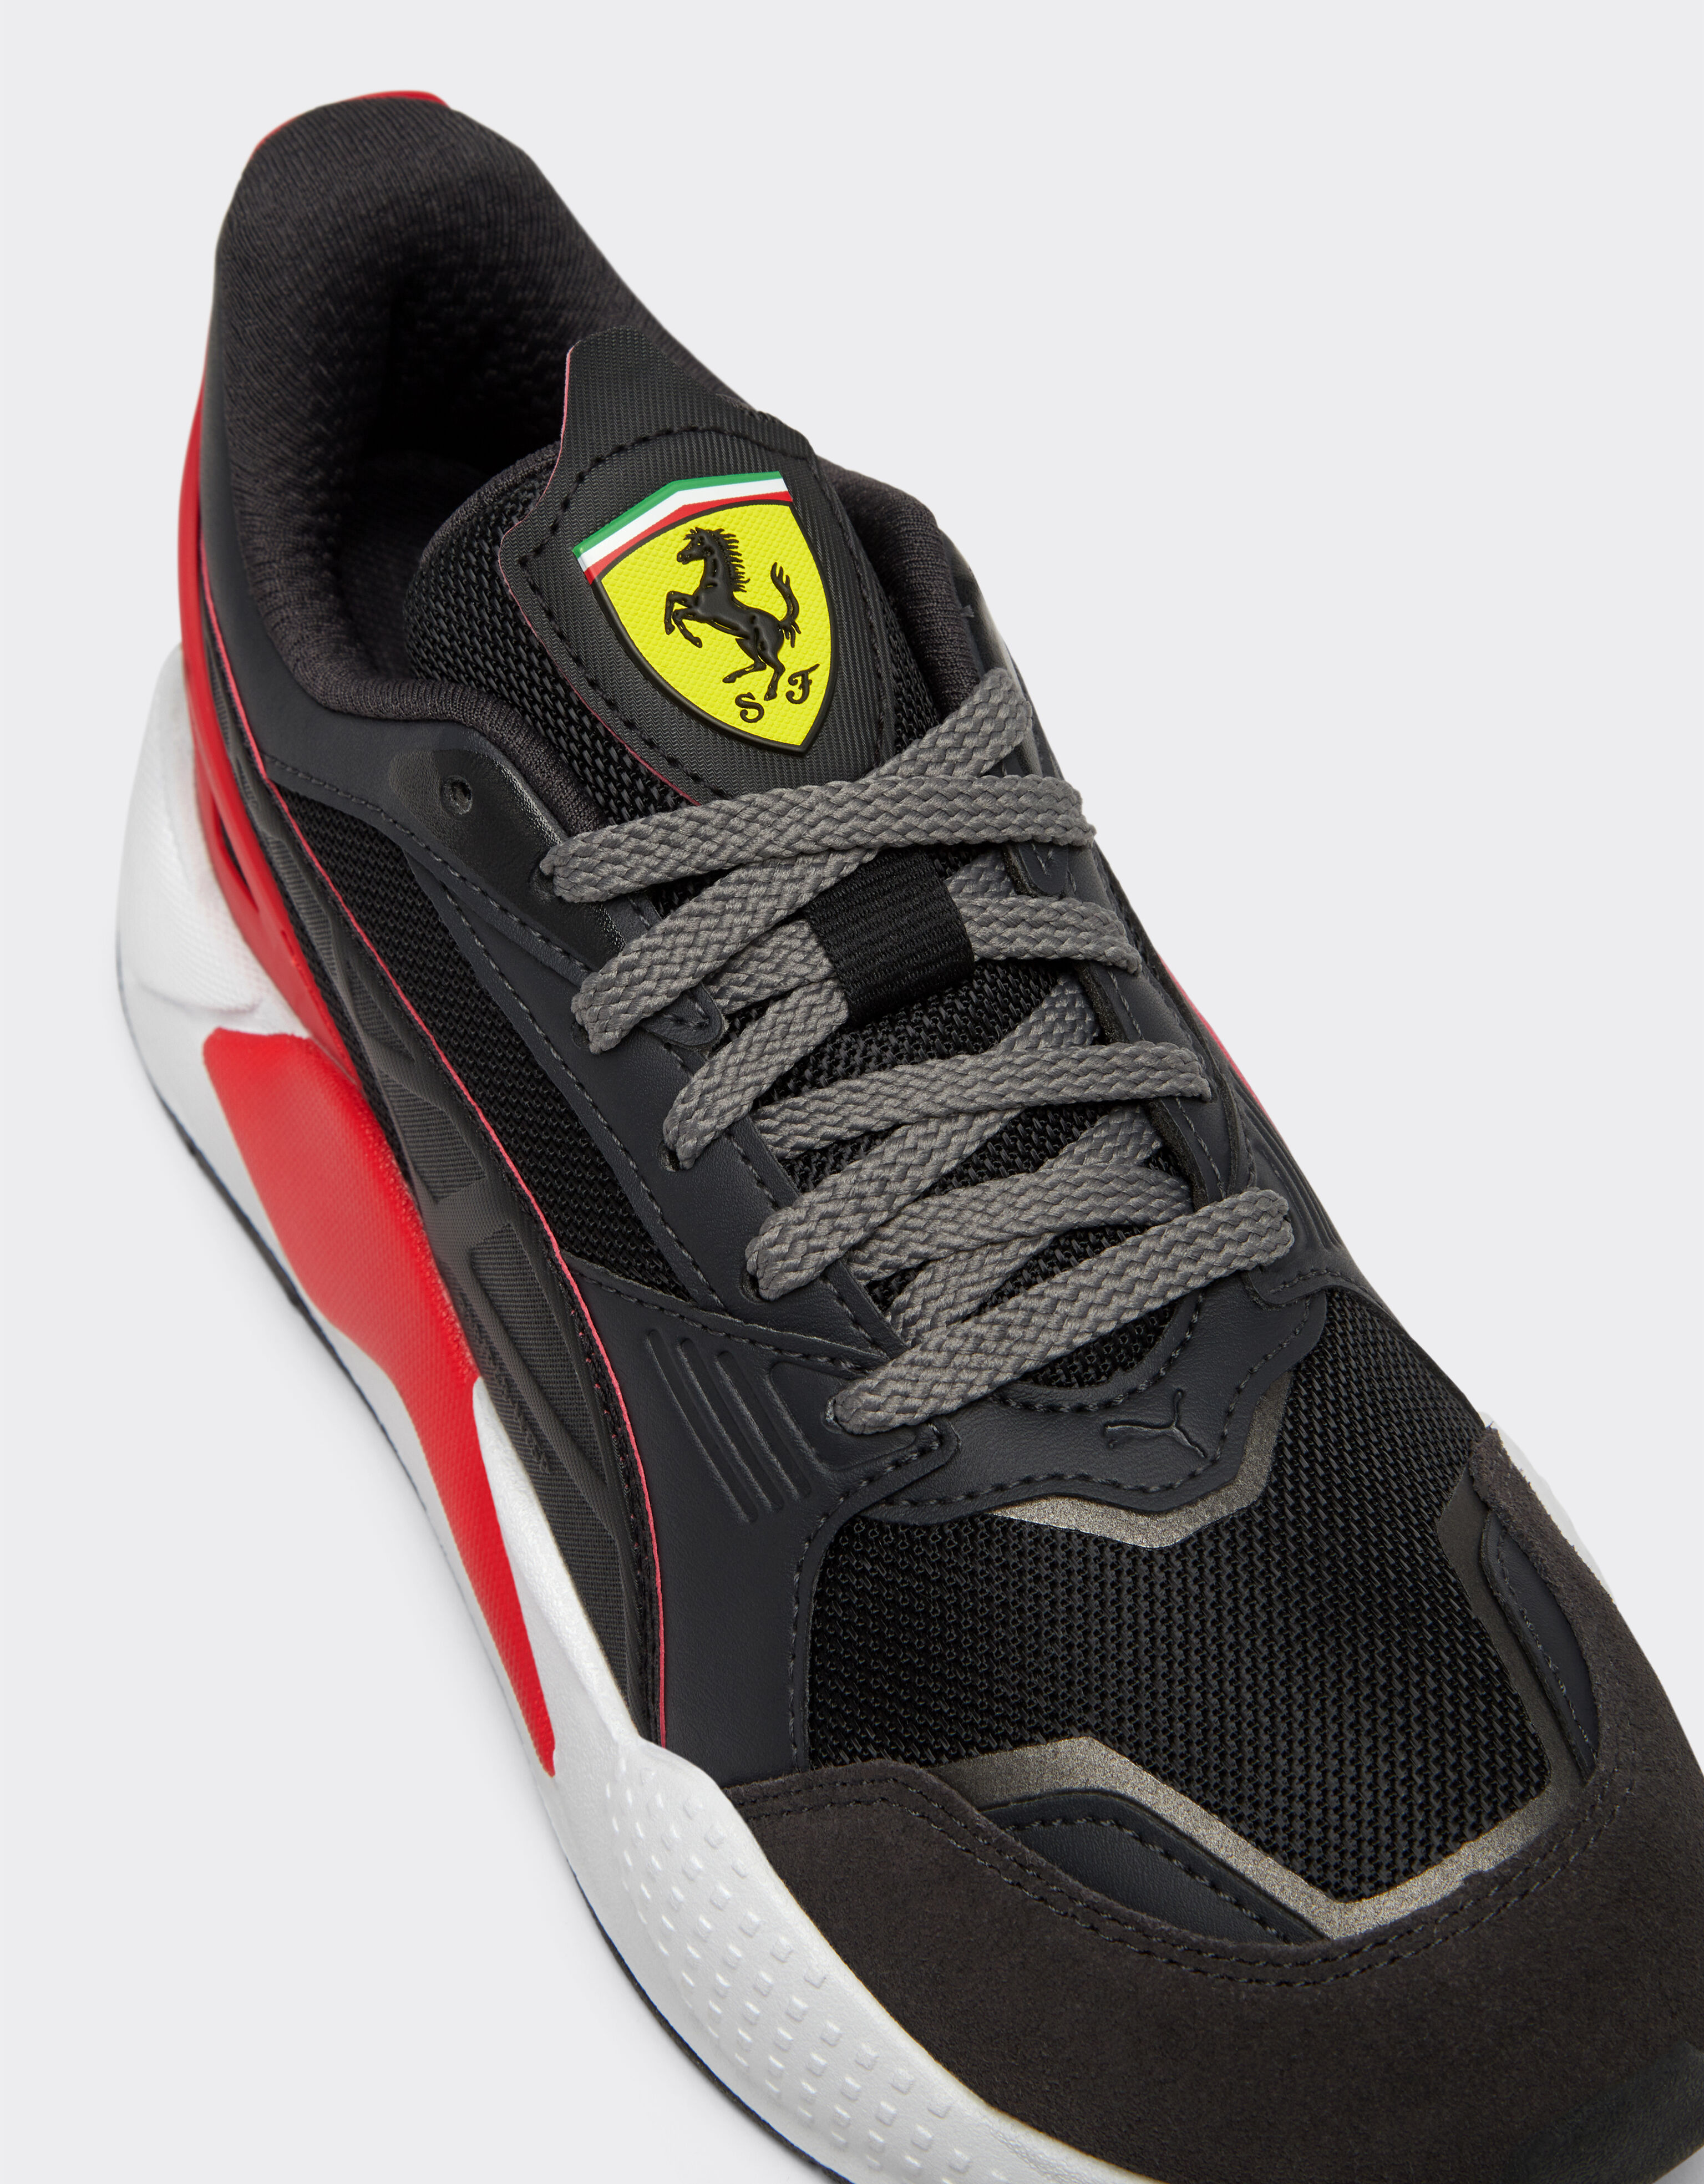 Ferrari Puma for Scuderia Ferrari RS-X trainers Black F1155f